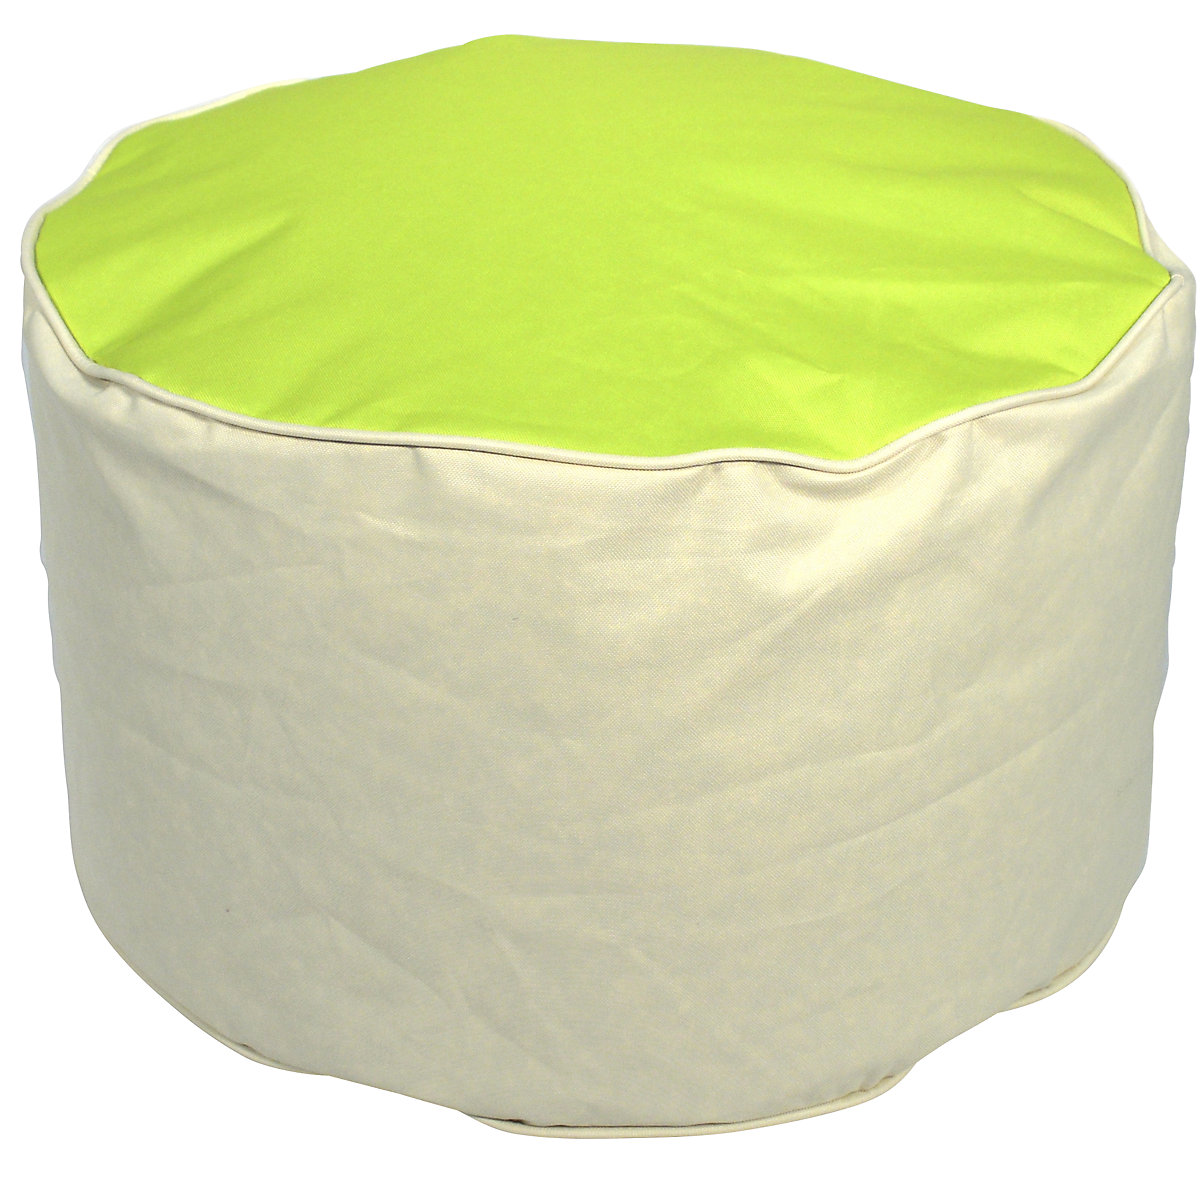 Manjša vreča brez naslonjala, VxØ 320 x 530 mm, beige / jabolčno zelene barve-8